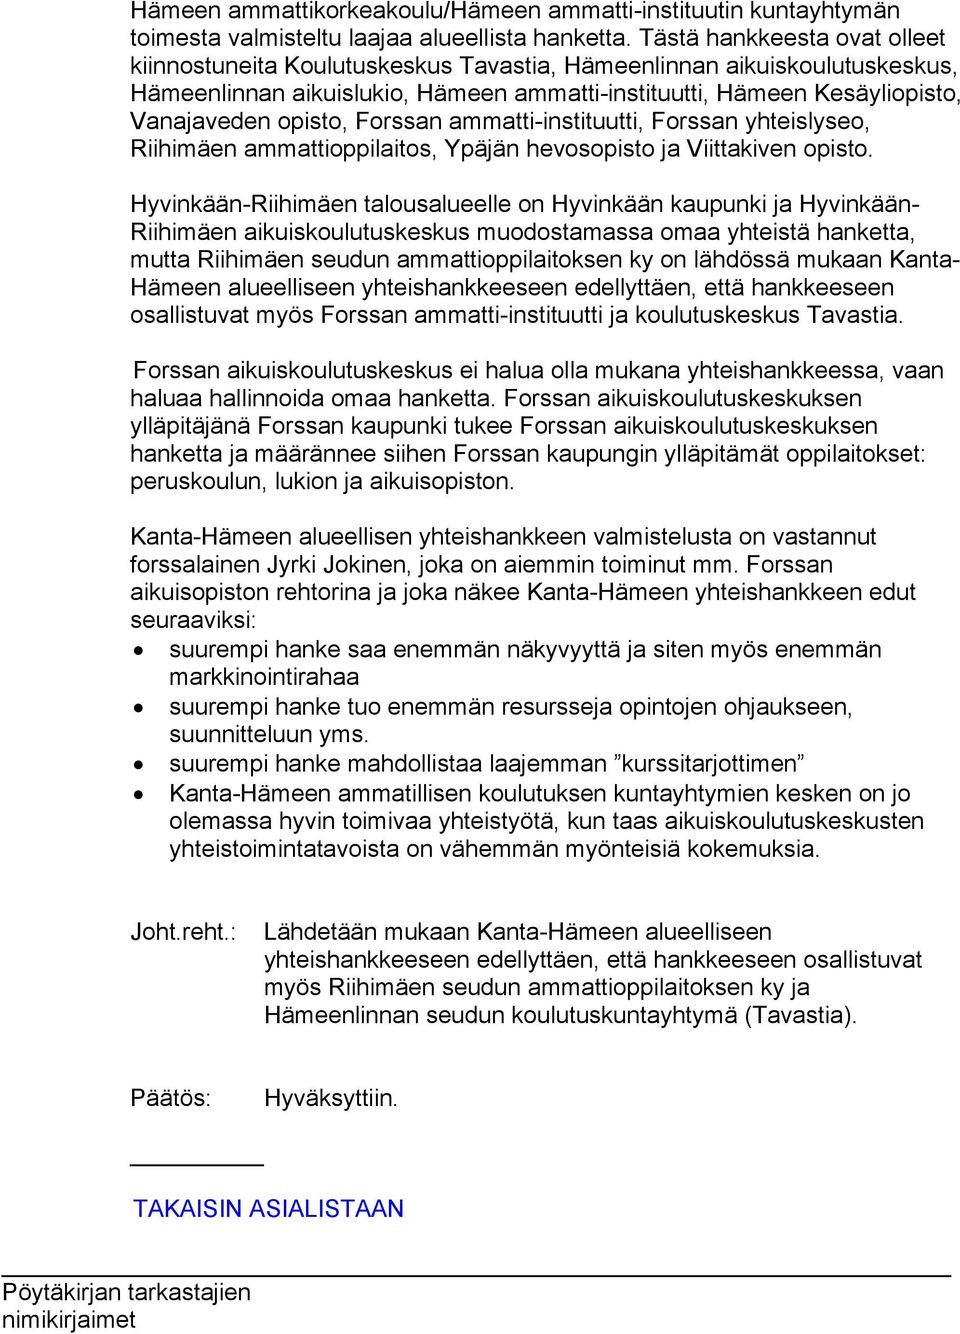 Forssan ammatti-instituutti, Forssan yhteislyseo, Riihimäen ammattioppilaitos, Ypäjän hevosopisto ja Viittakiven opisto.